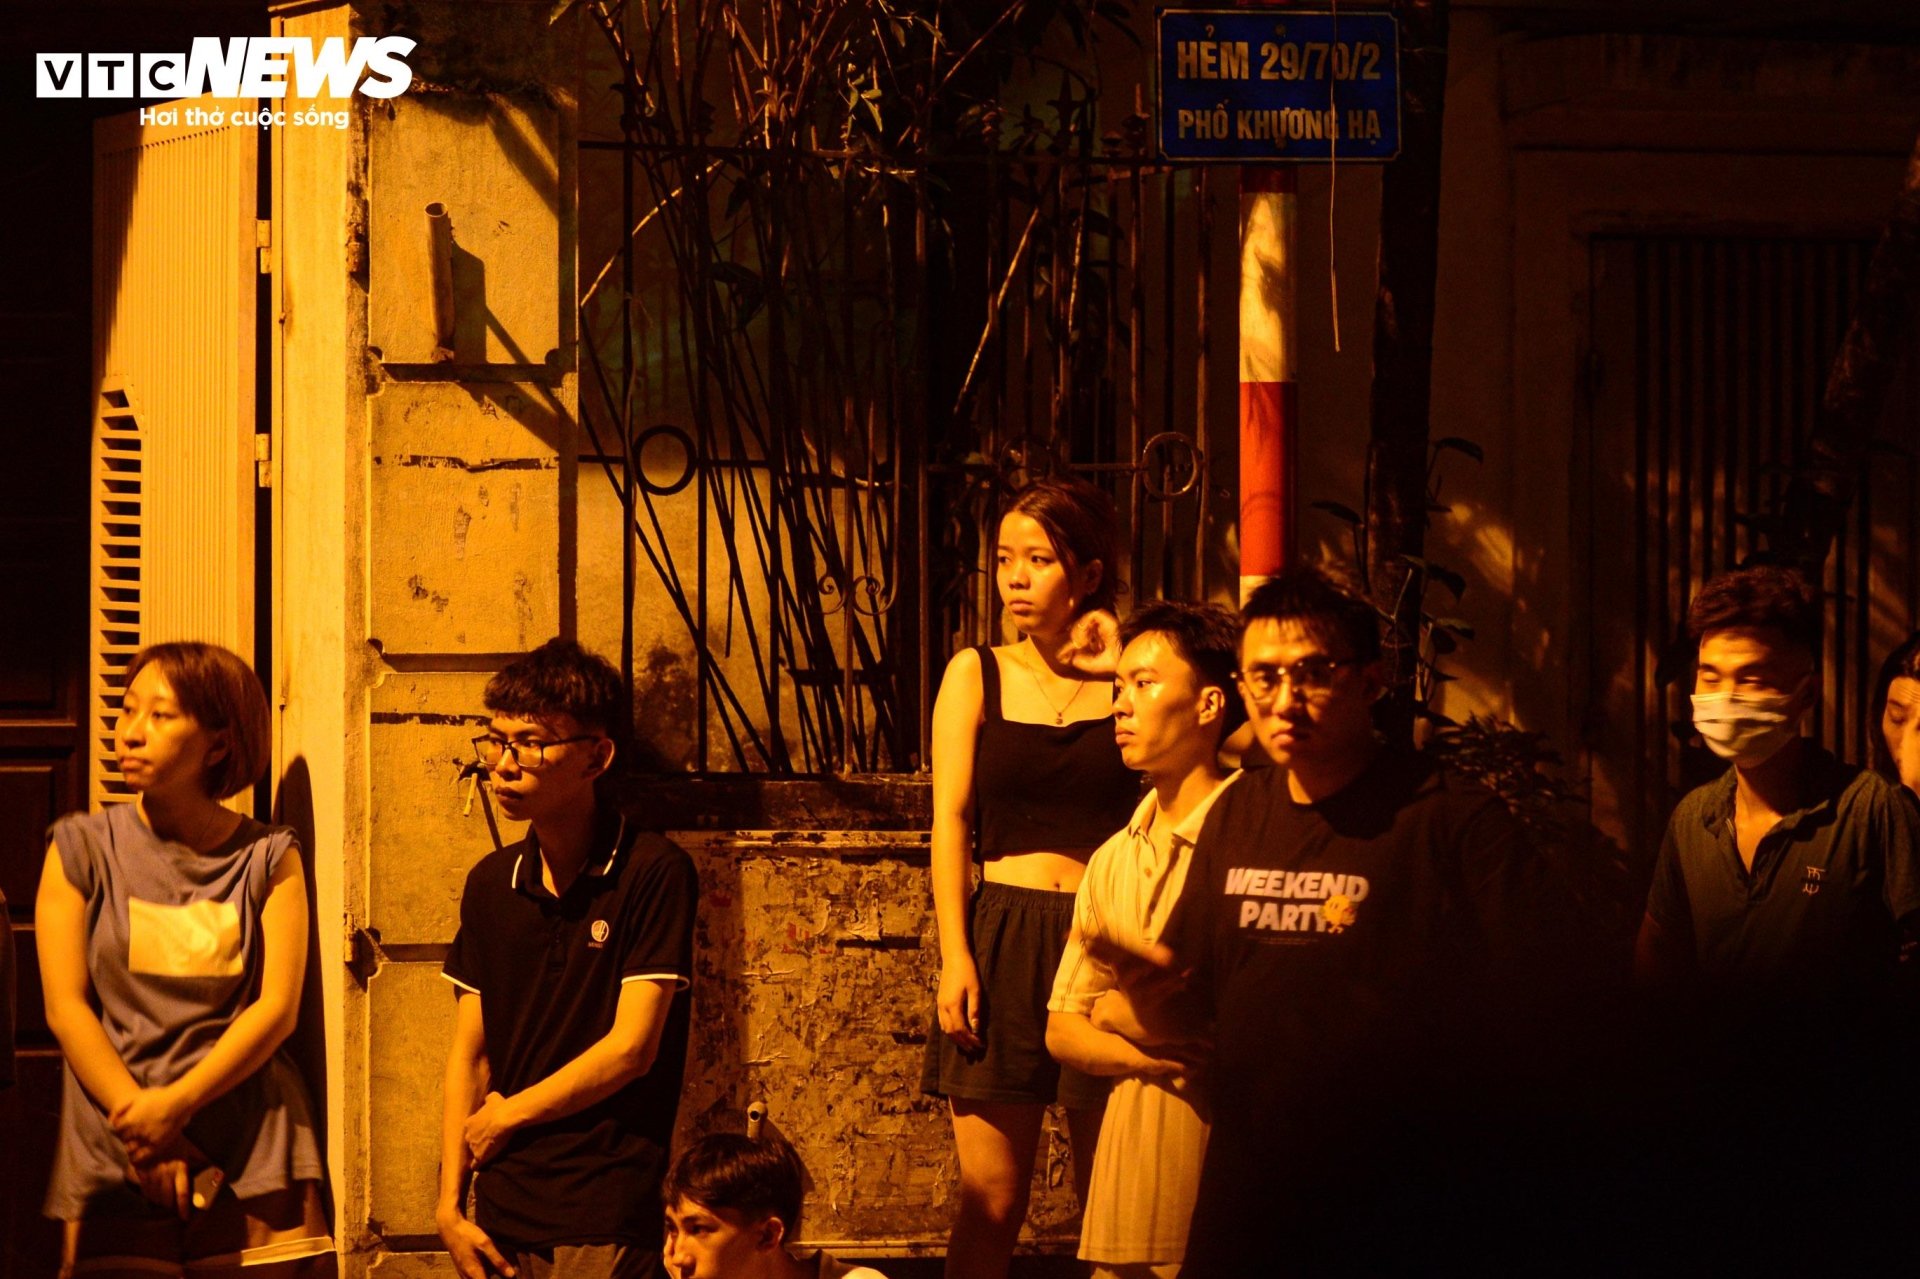 Hiện trường vụ cháy chung cư mini ở Hà Nội trong đêm, nhiều người ngất xỉu - Ảnh 6.